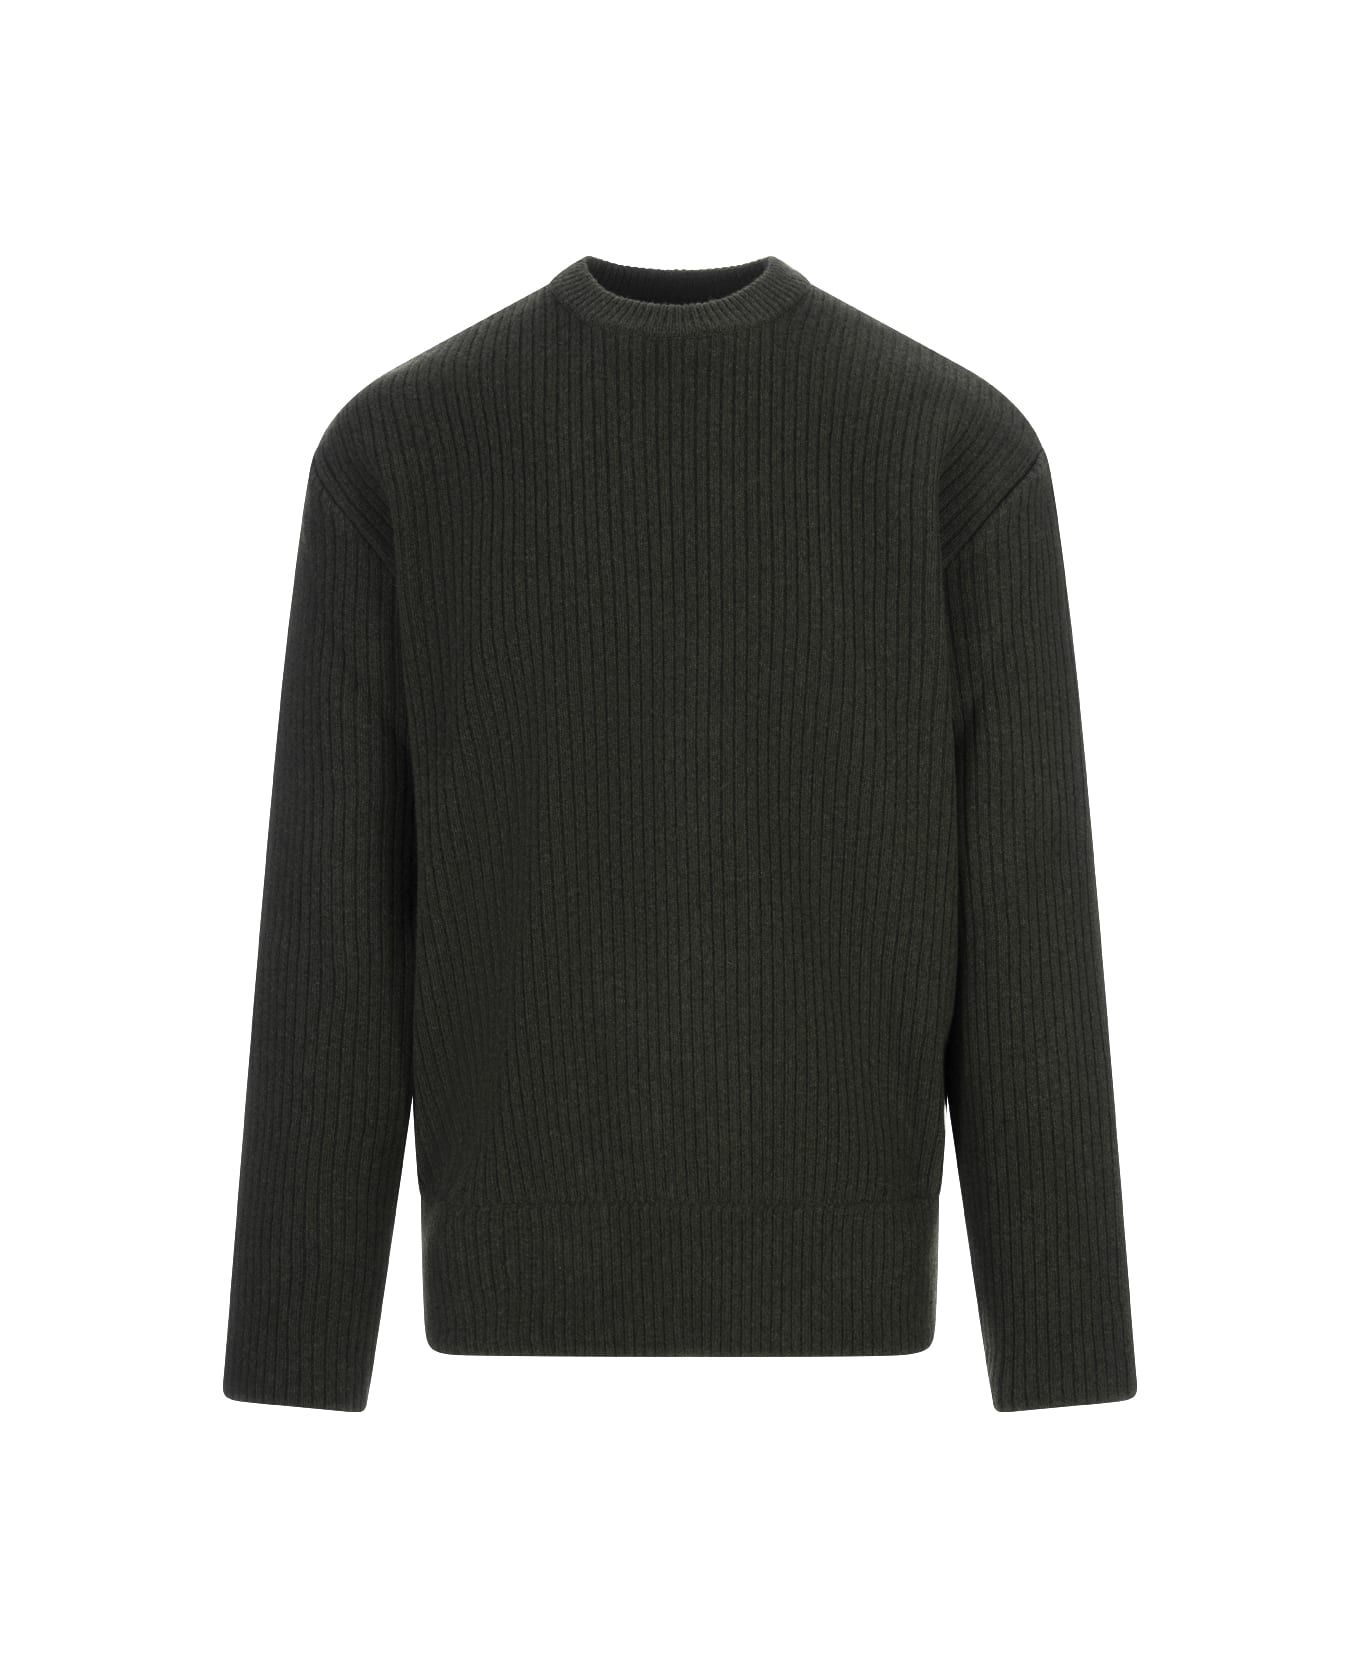 Givenchy Ribbed Sweater - Green ニットウェア